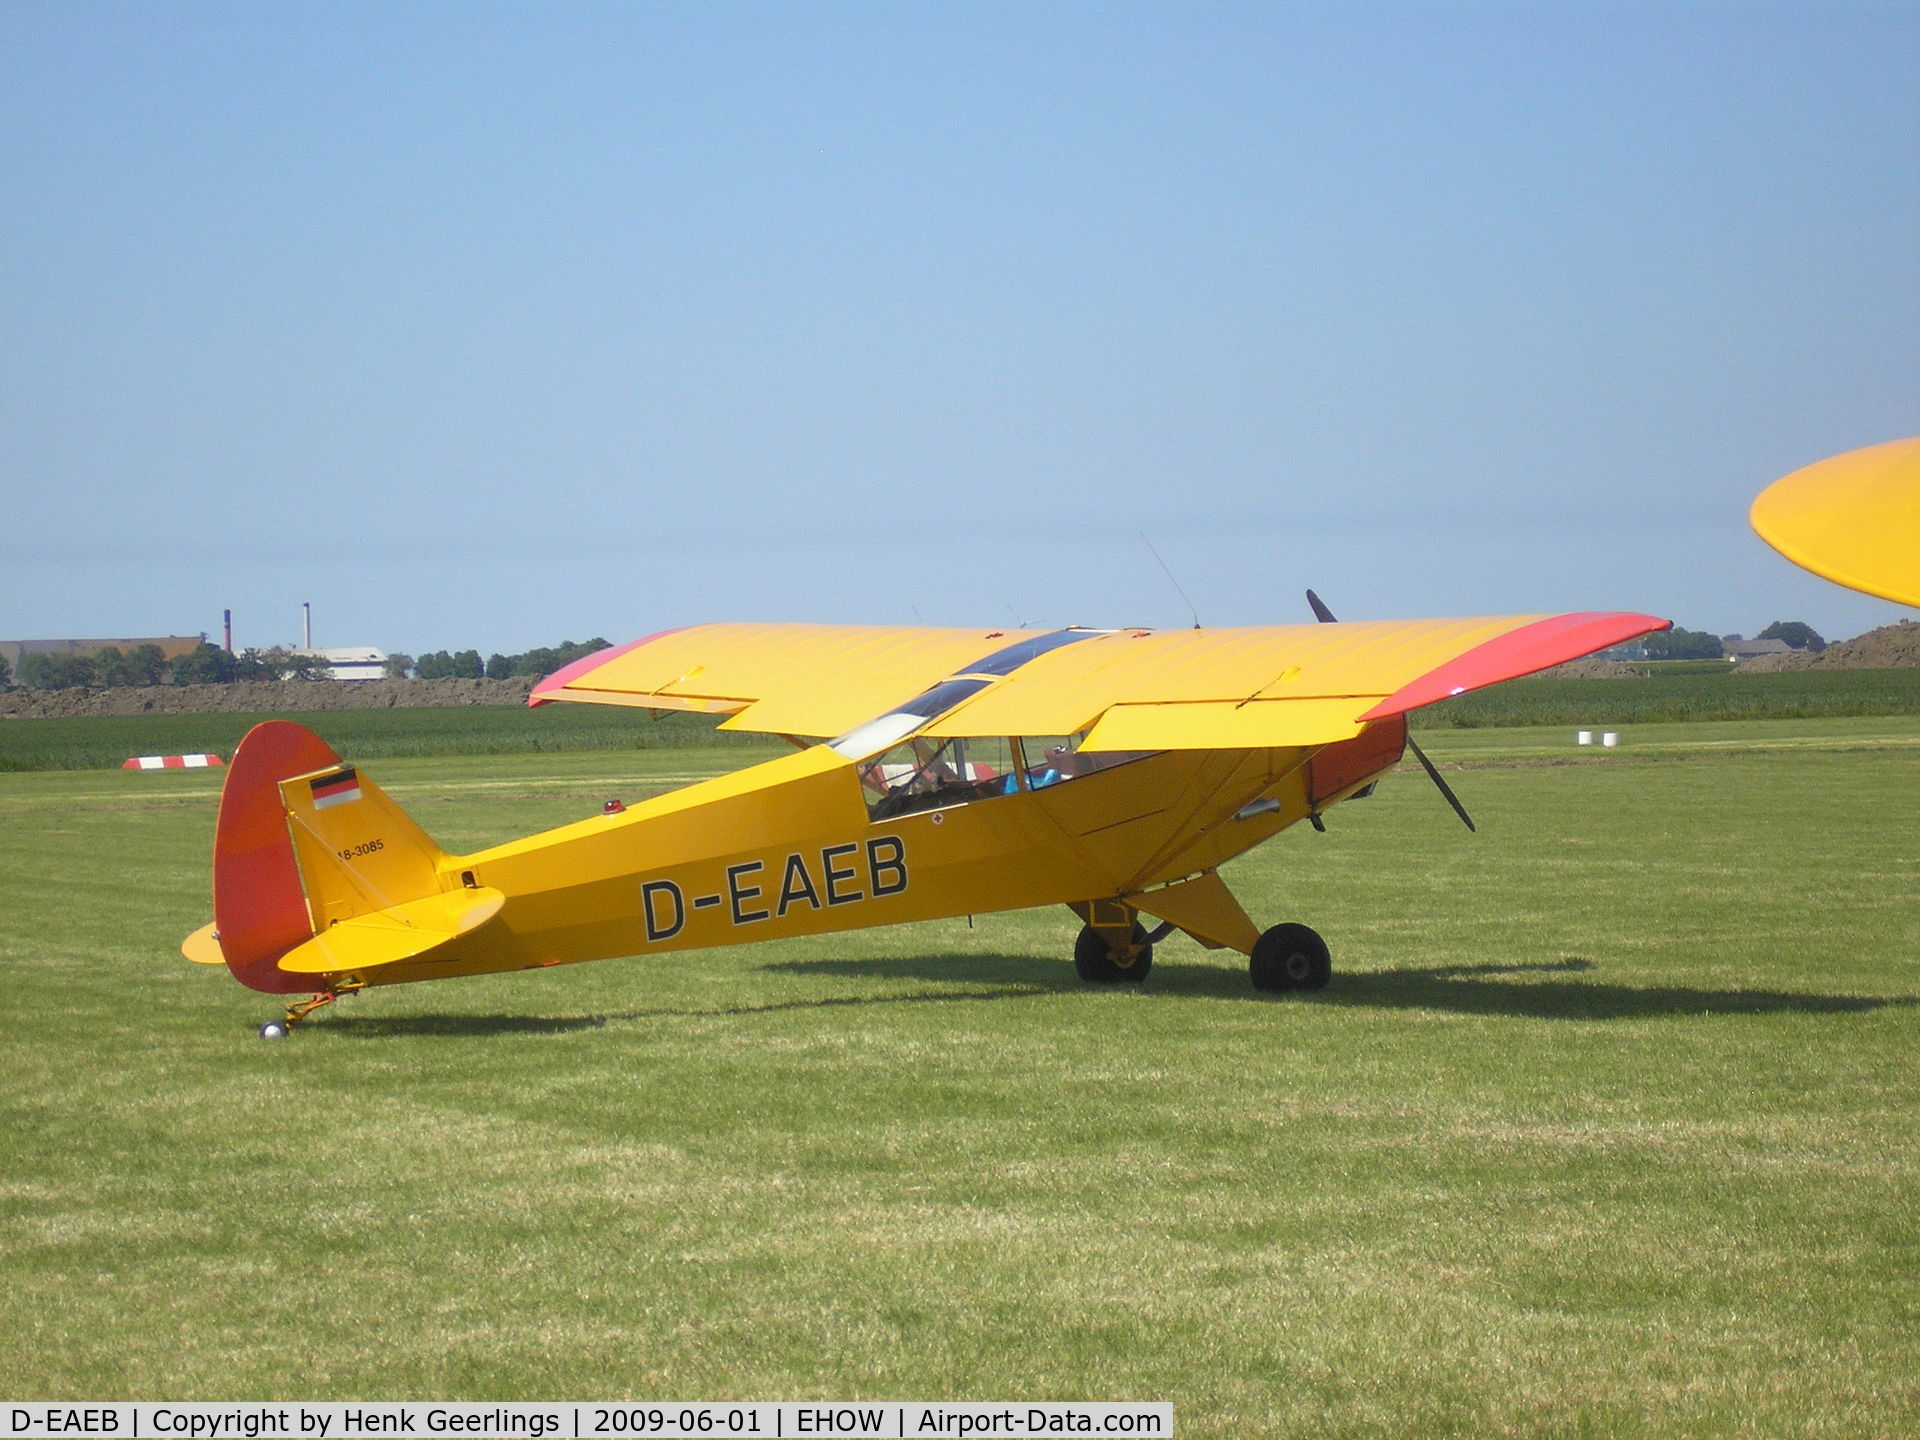 D-EAEB, 1971 Piper PA-18-95 Super Cub Super Cub C/N 18-3085, Oostwold  Airport  Airshow june 2009